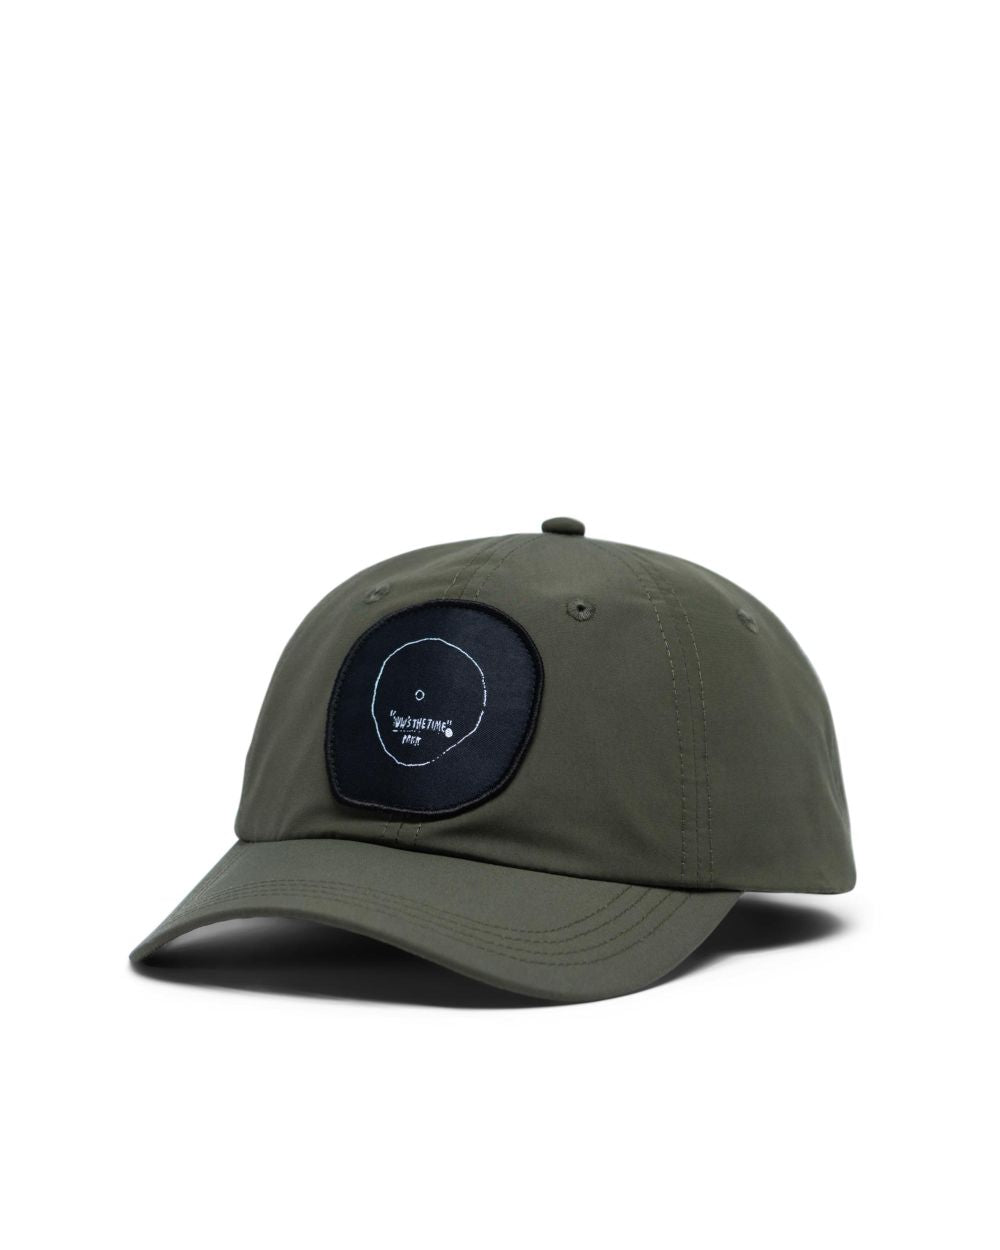 Herschel Supply Co. x Basquiat - Mosby Curve Hat, Dark Olive